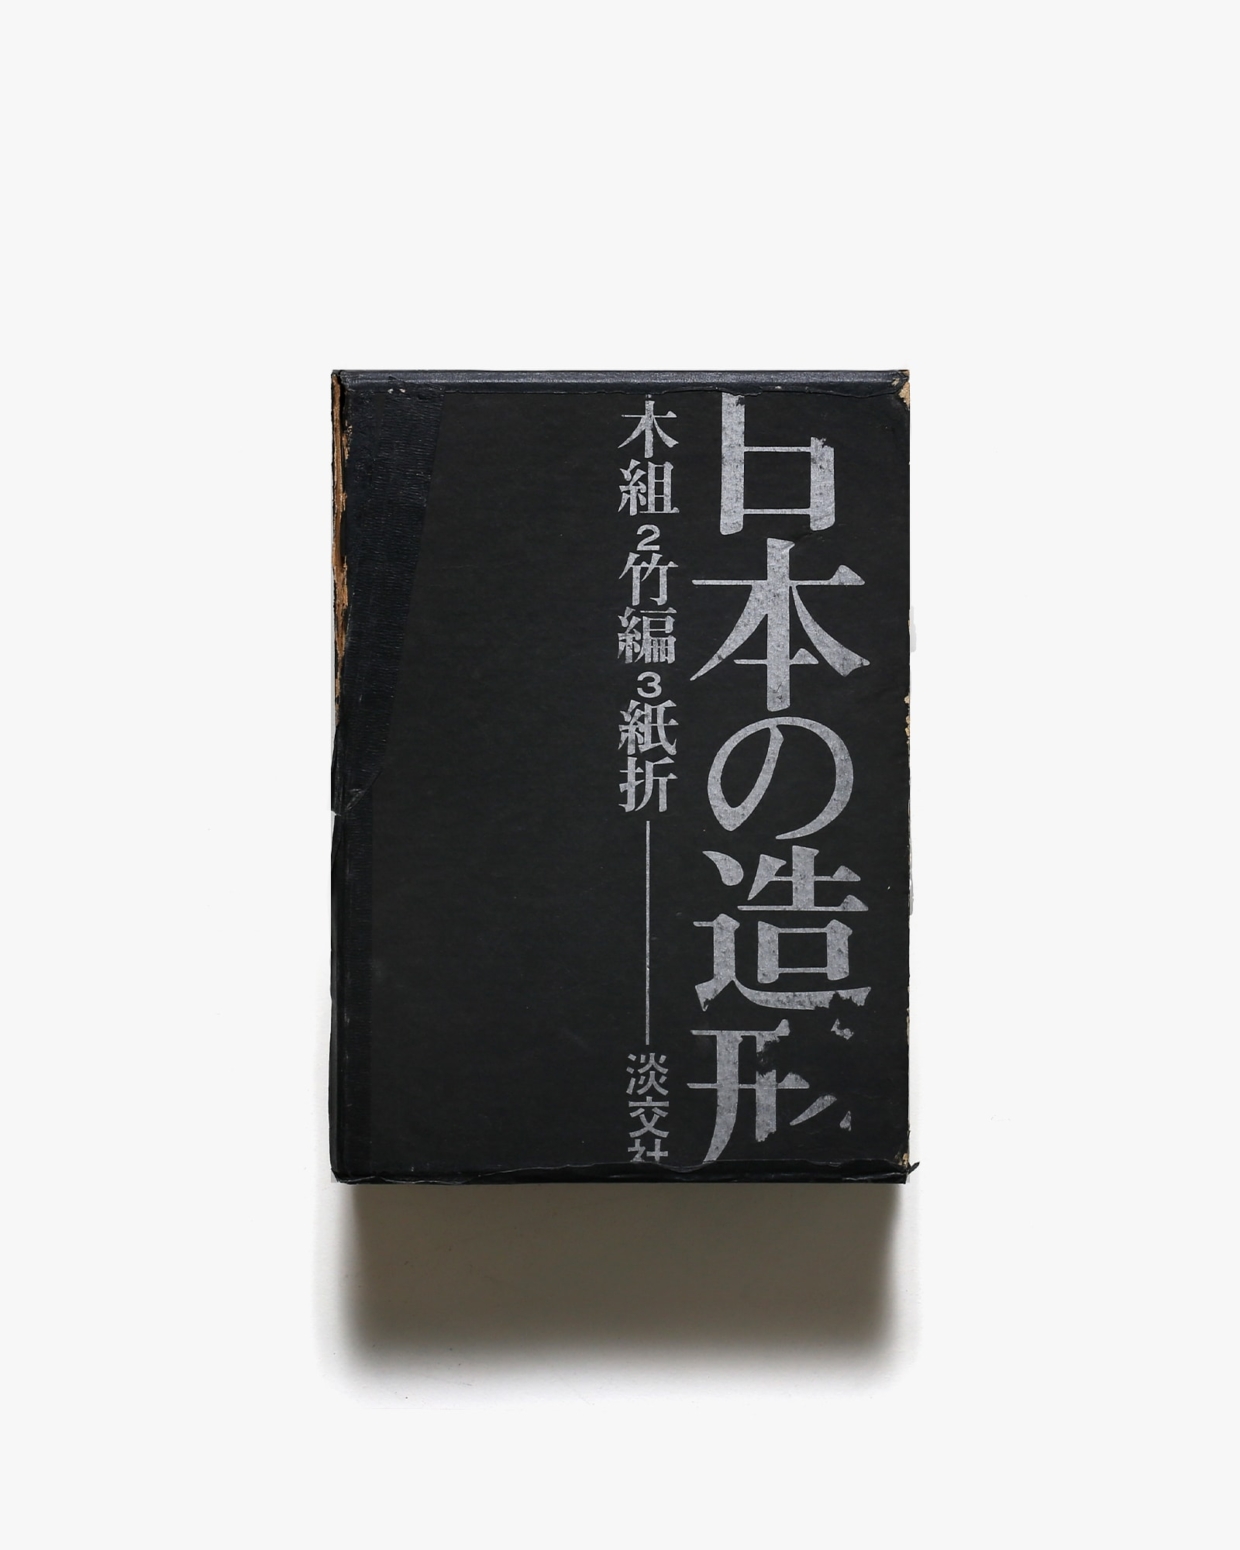 日本の造形 全3巻揃 | 清家清、水尾比呂志、吉田光邦